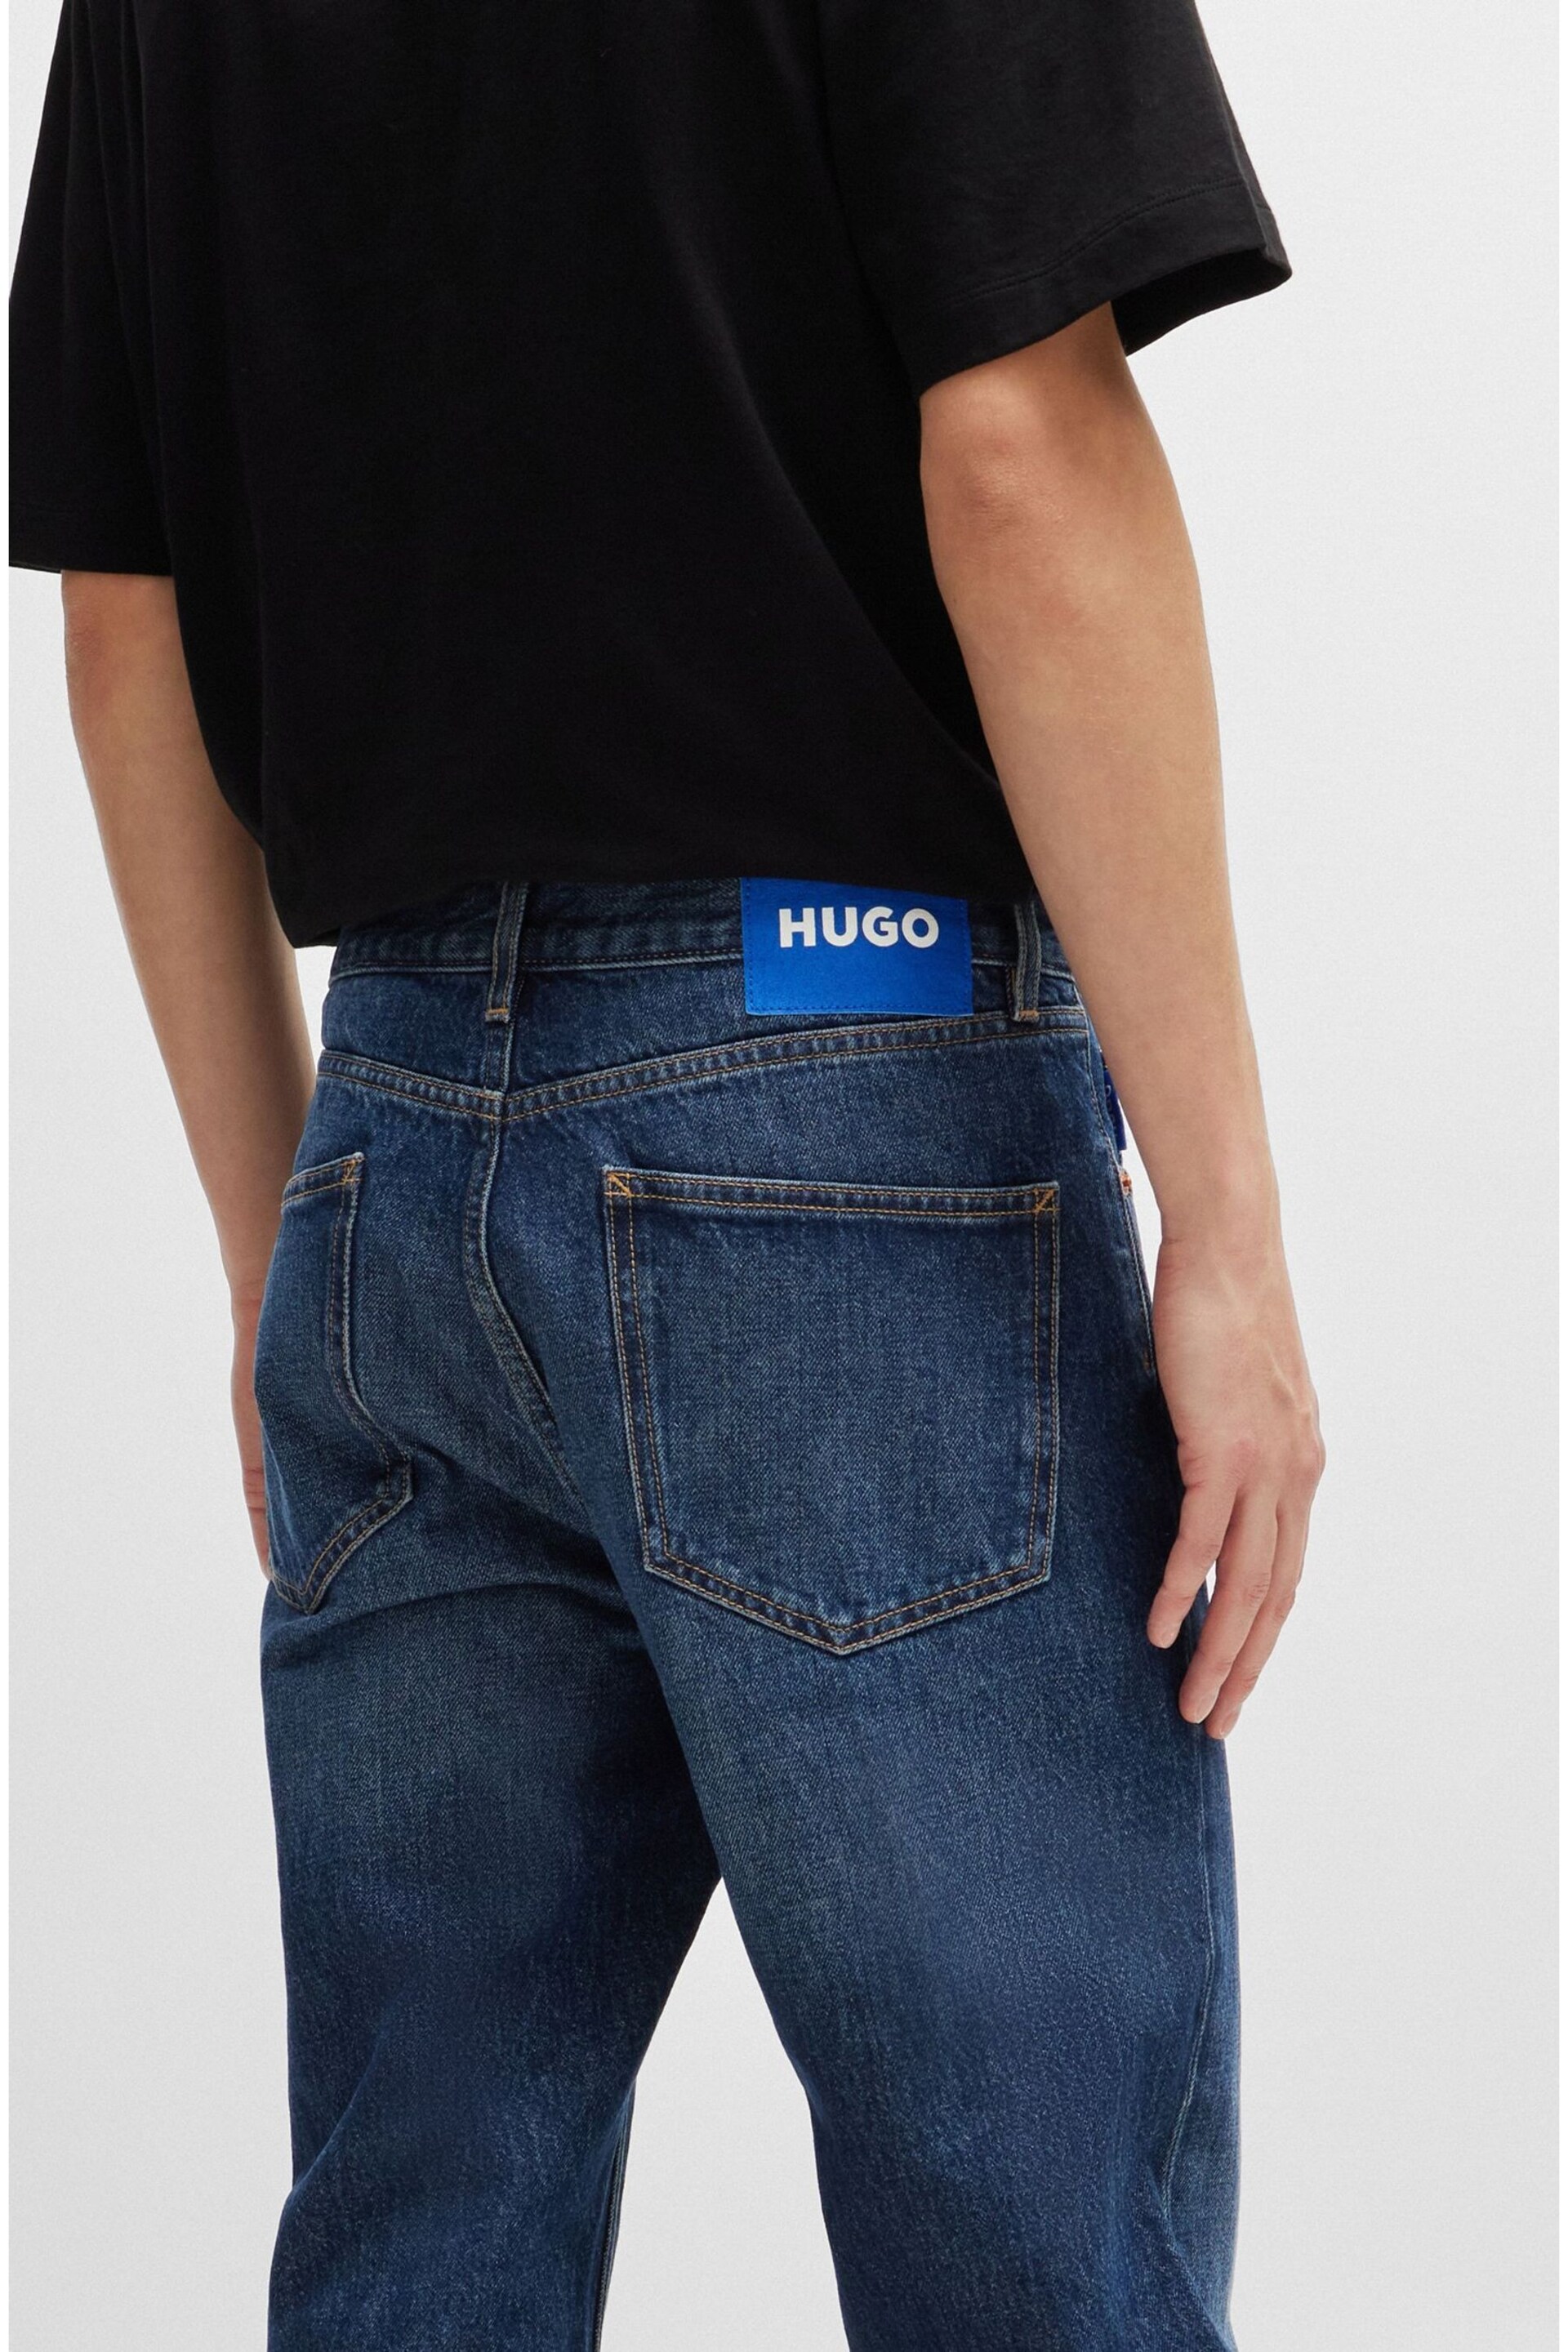 HUGO Blue Regular Fit Stonewash Denim Jeans - Image 4 of 5